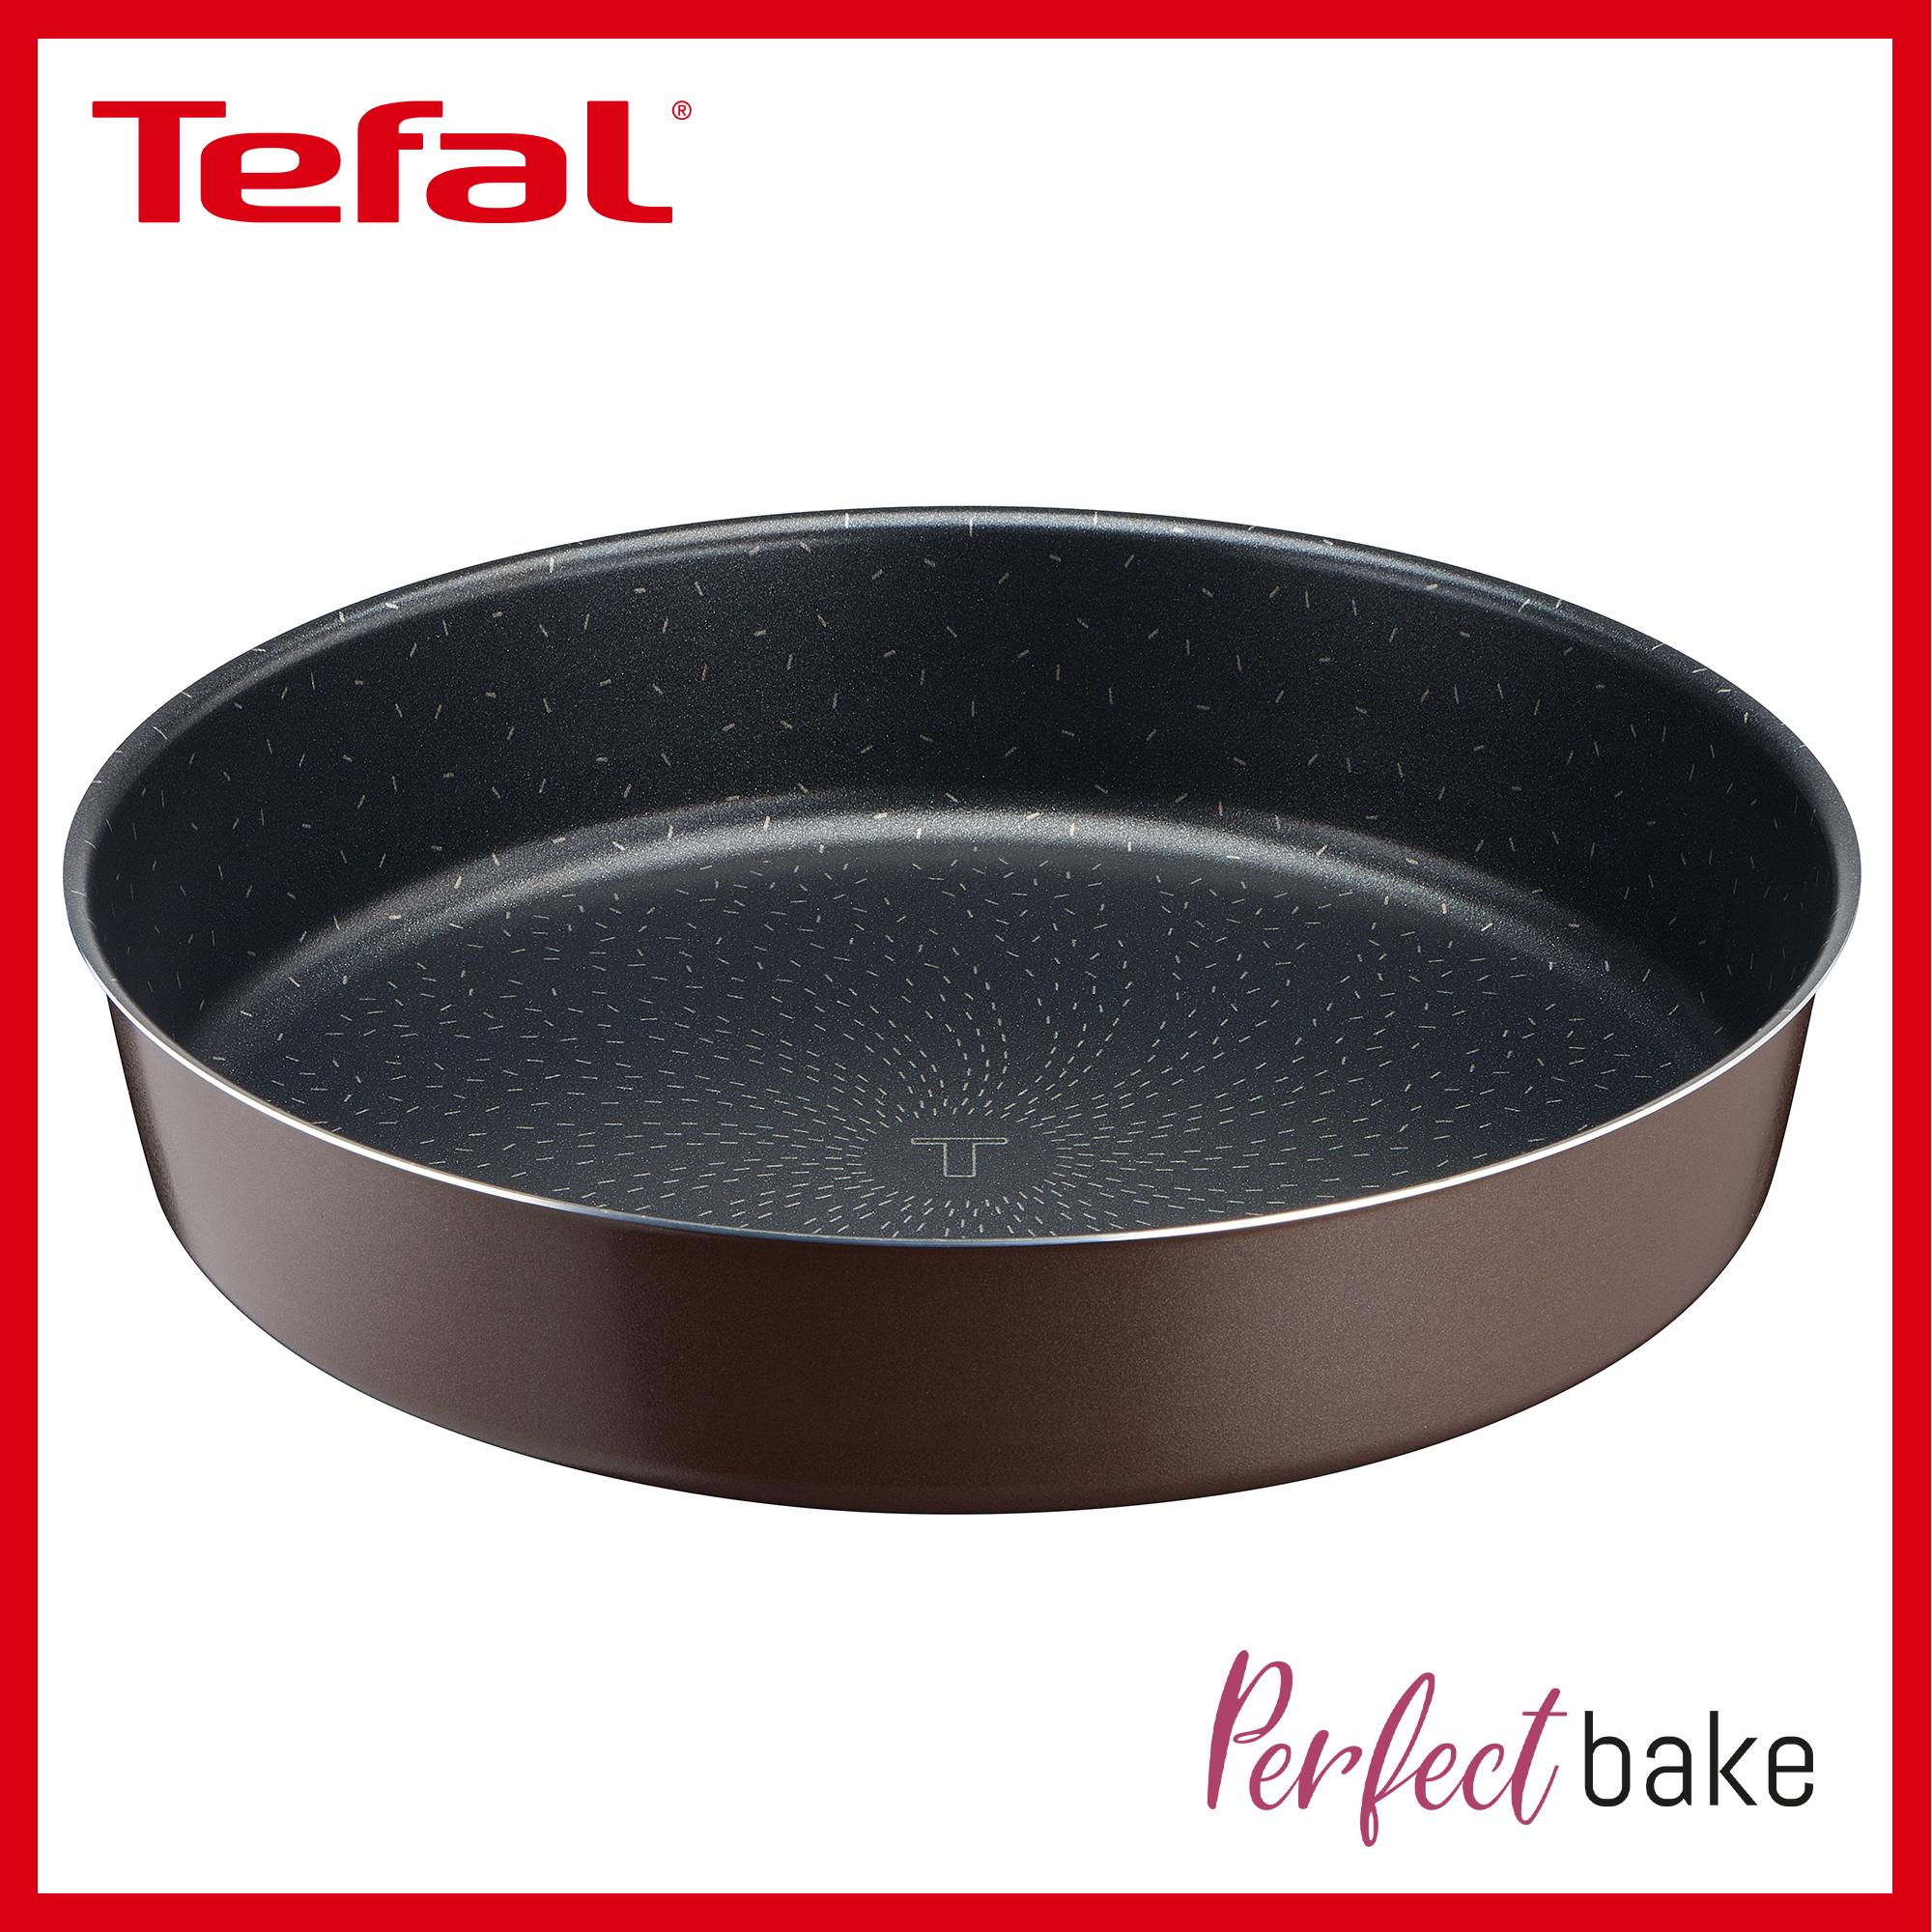 Tefal Perfectbake Aluminium Non-stick Round Cake Tin with